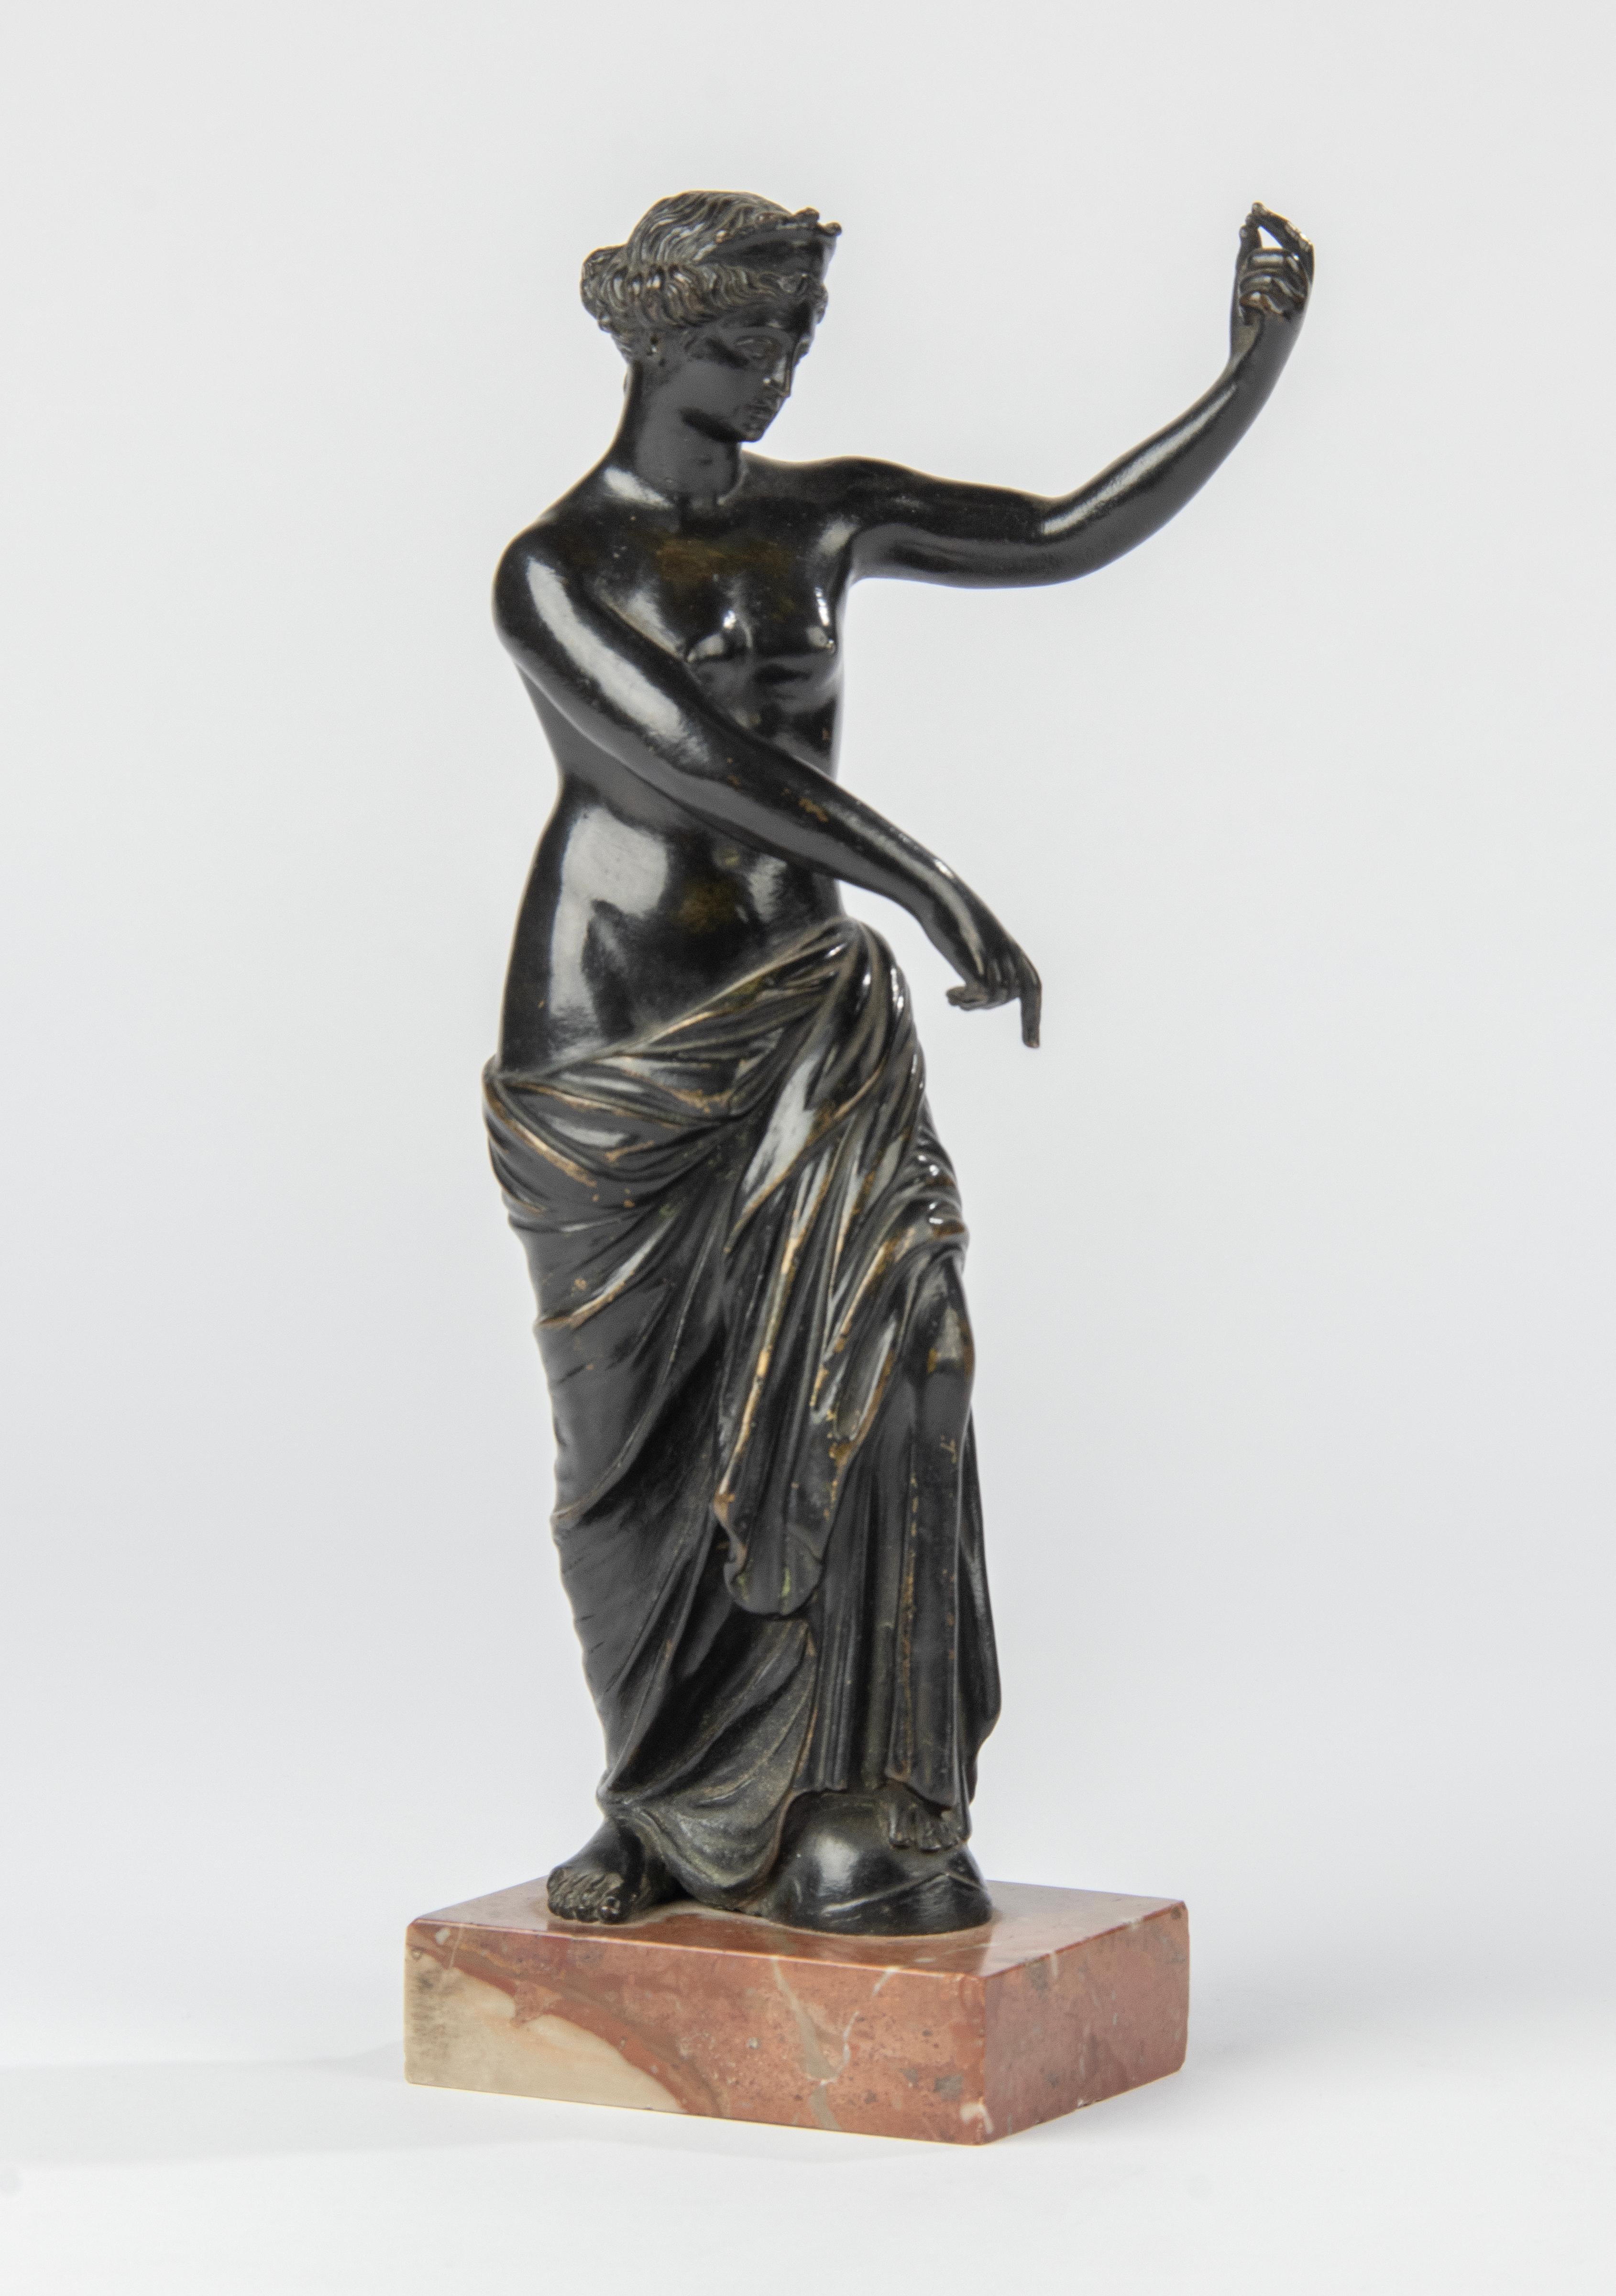 Une belle statue antique en bronze représentant Aphrodite / Vénus, une déesse de l'antiquité classique. Cette statue en bronze date d'environ 1870 et a été fabriquée en France. La statue n'est pas signée, il s'agit d'une statue réalisée d'après un